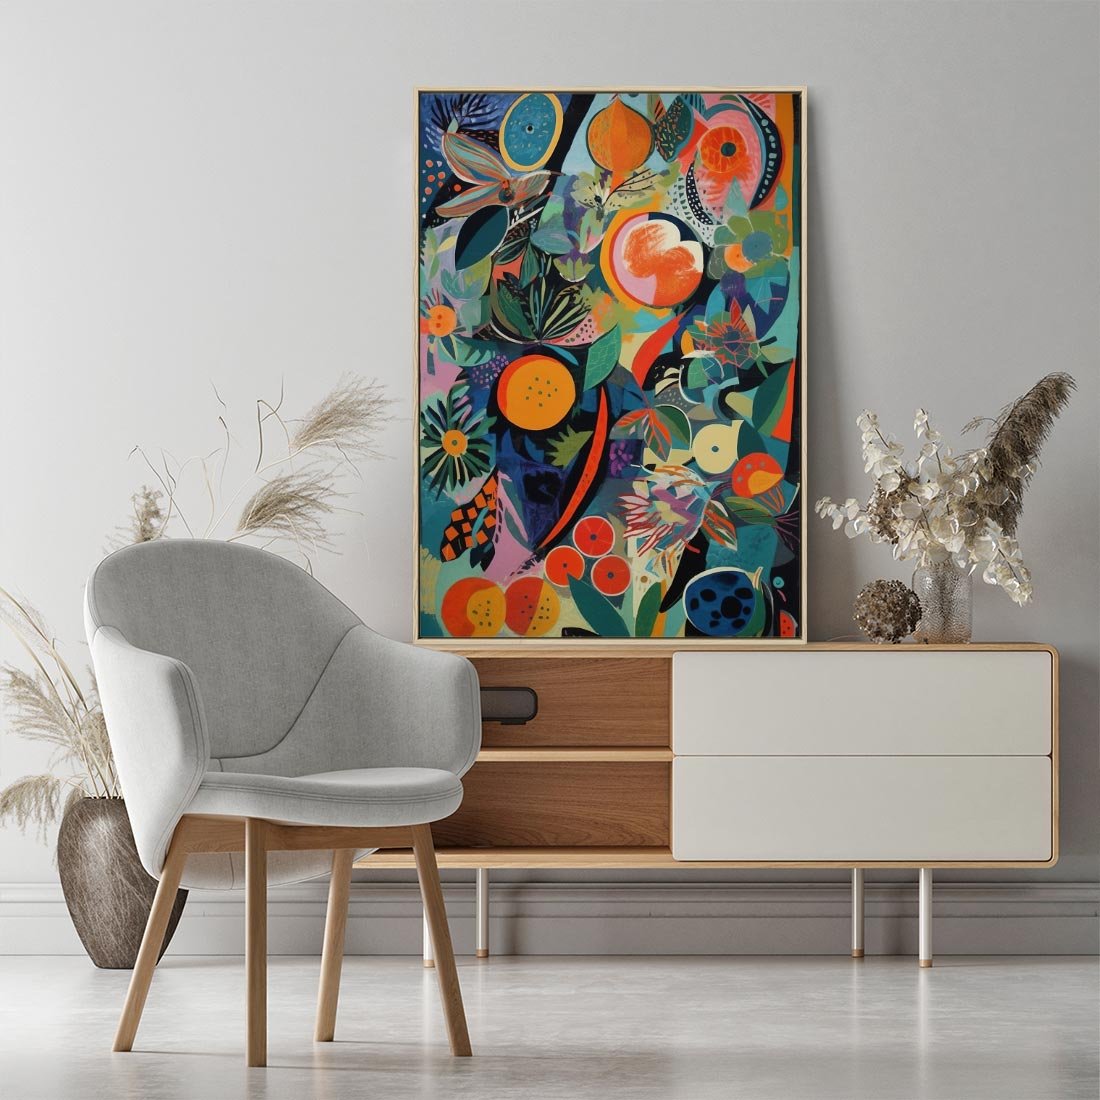 Obraz w ramie 50x70 - Echa Nietuzinkowych Wzorców - abstrakcyjny obraz olejny, jak picasso - rama drewno